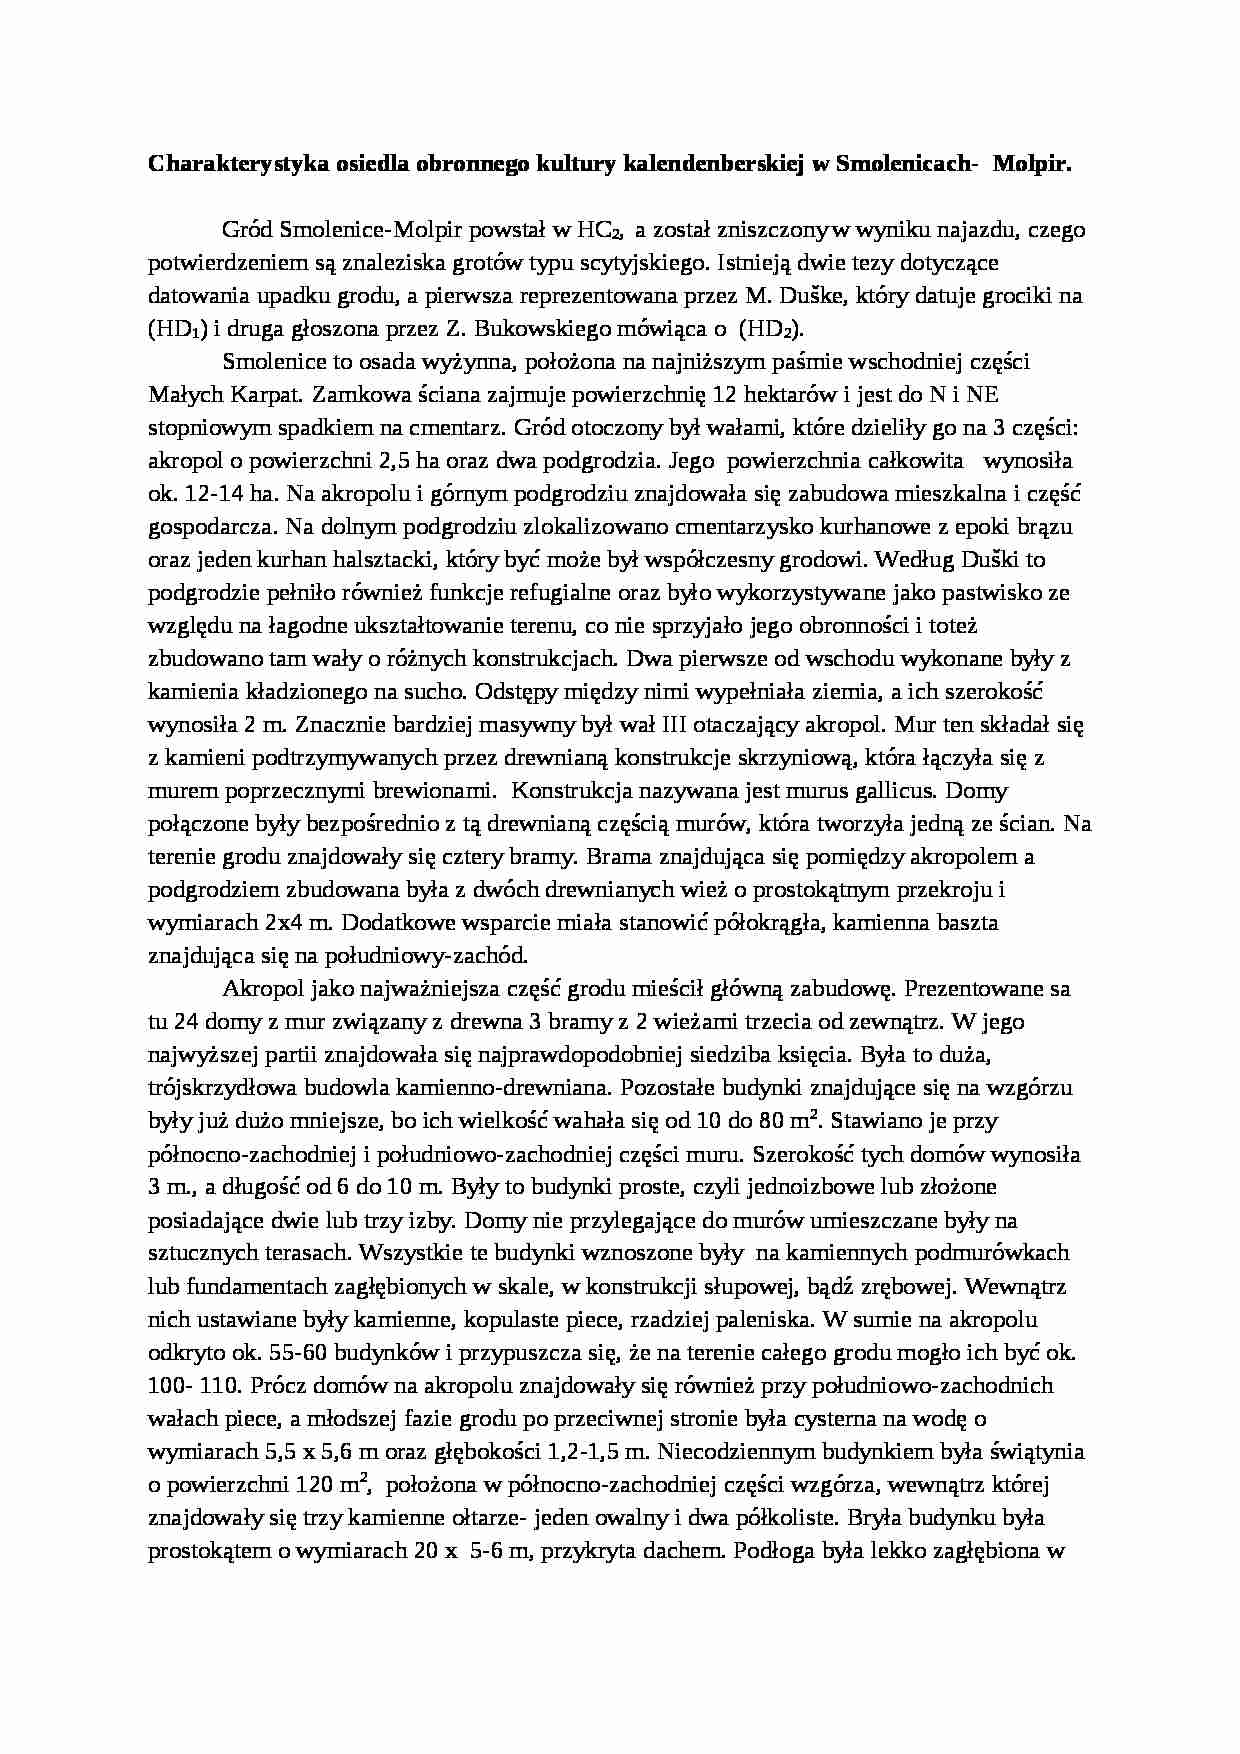 Charakterystyka osiedla obronnego kultury kalendenberskiej w Smolenicach - omówienie - strona 1